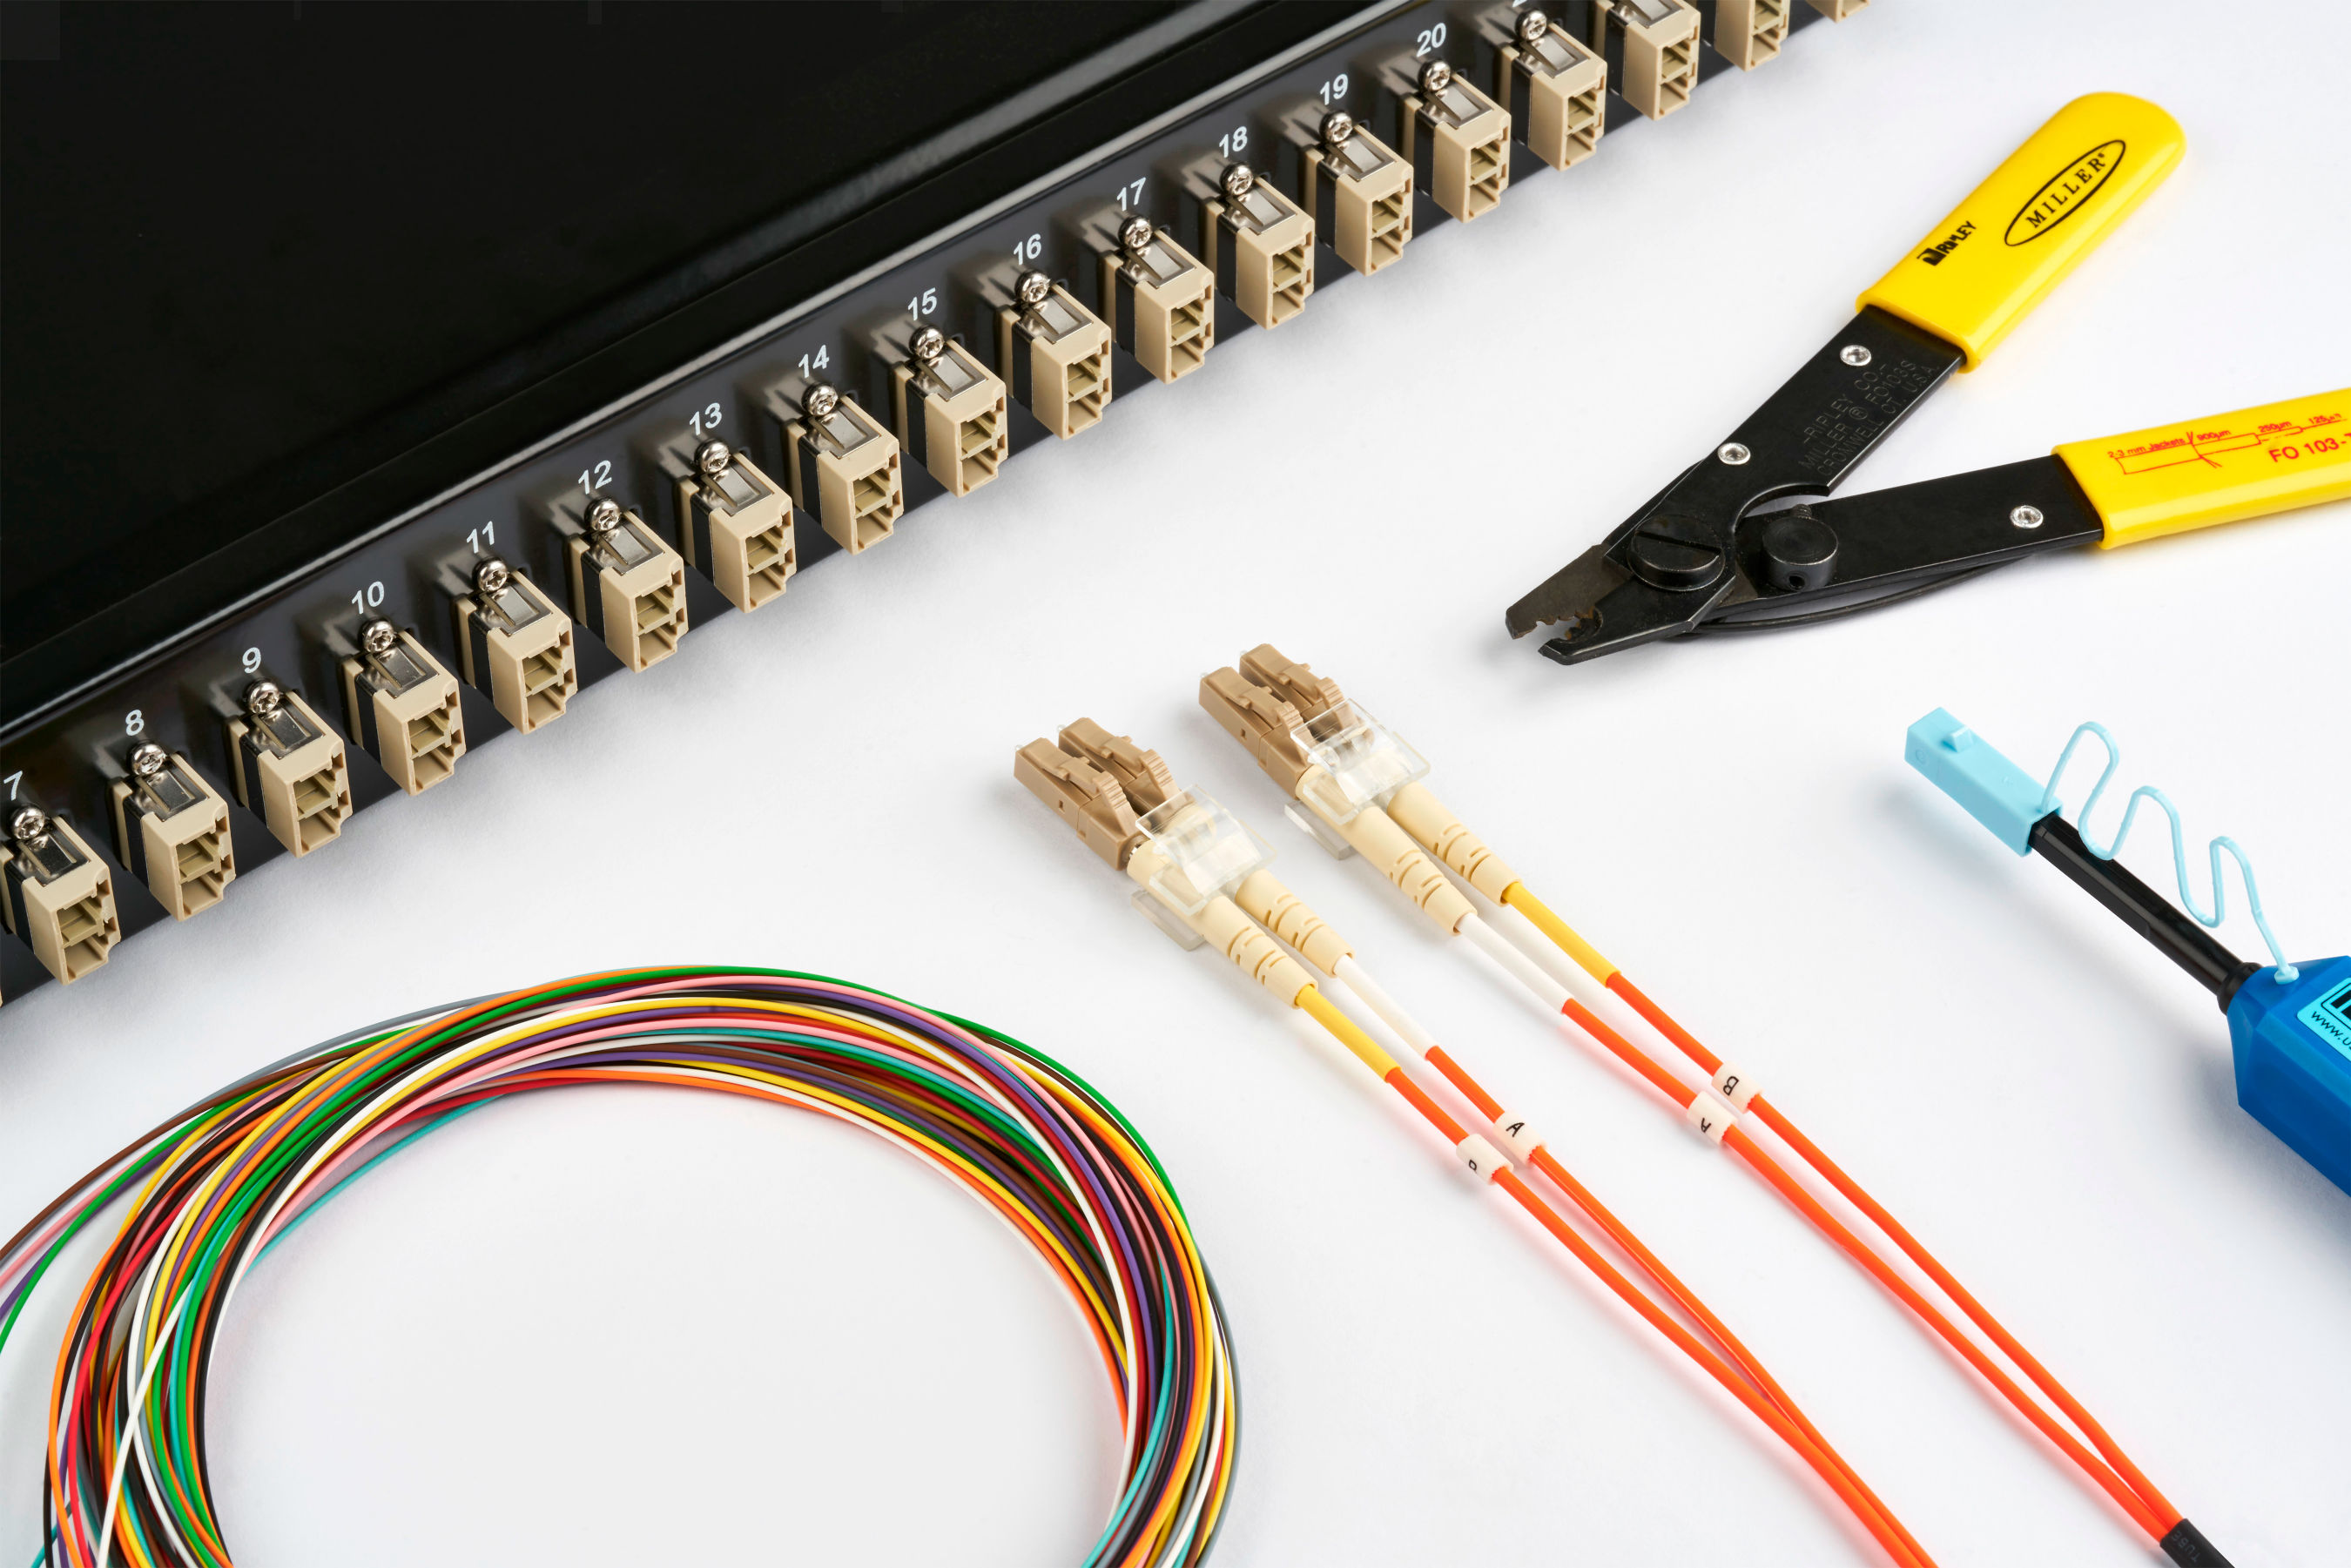 Netzwerkkomponenten und Werkzeuge, darunter ein Patchpanel, LWL-Patchkabel, farbige Kabel und ein Abisolierwerkzeug.